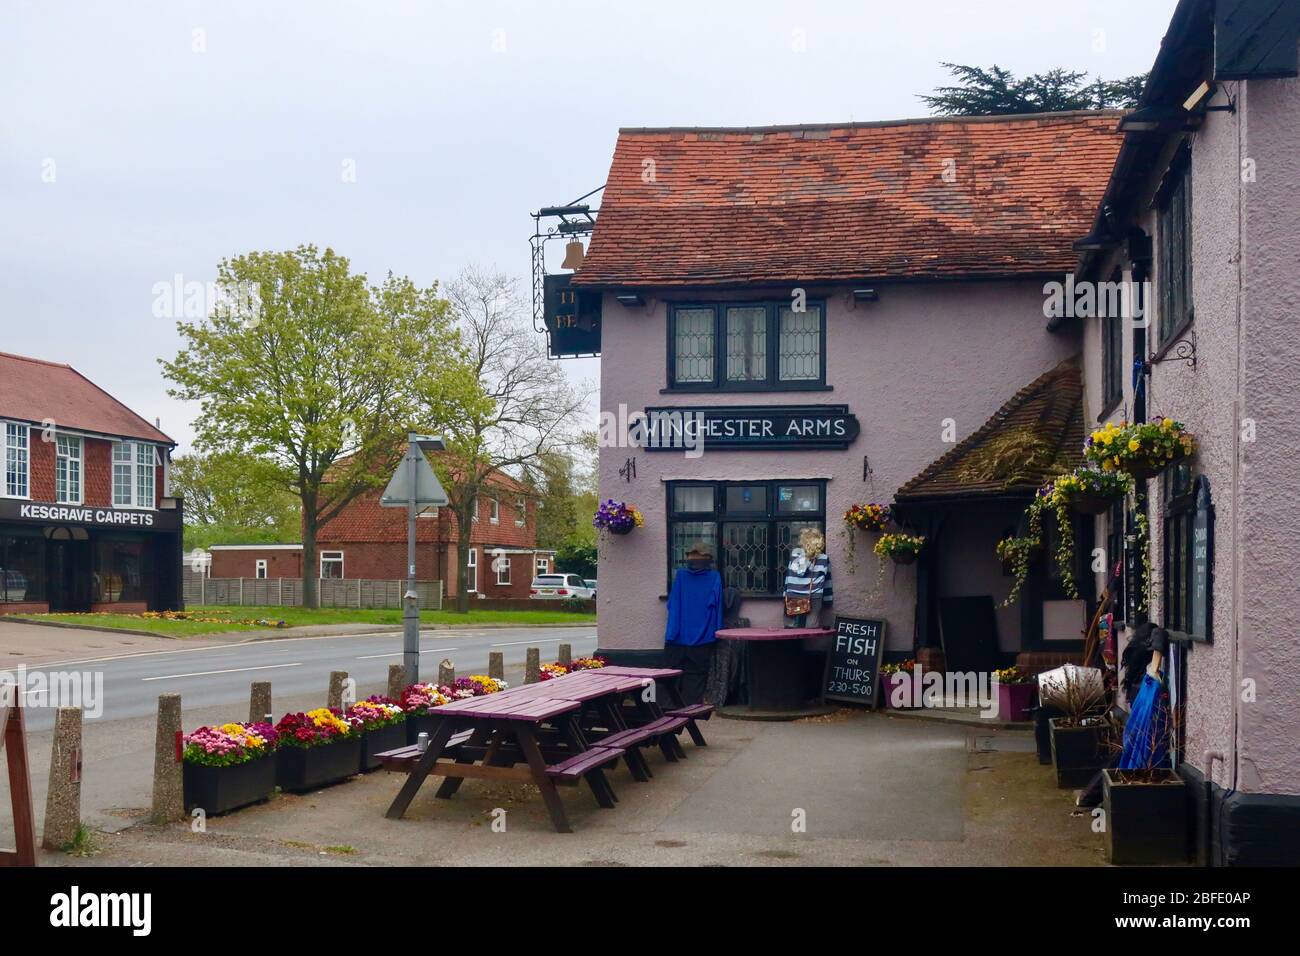 Kesgrave, Suffolk, Royaume-Uni - 18 avril 2020: Le Bell Inn a été temporairement renommé Winchester Arms après le film zombie Shaun of the Dead. Banque D'Images